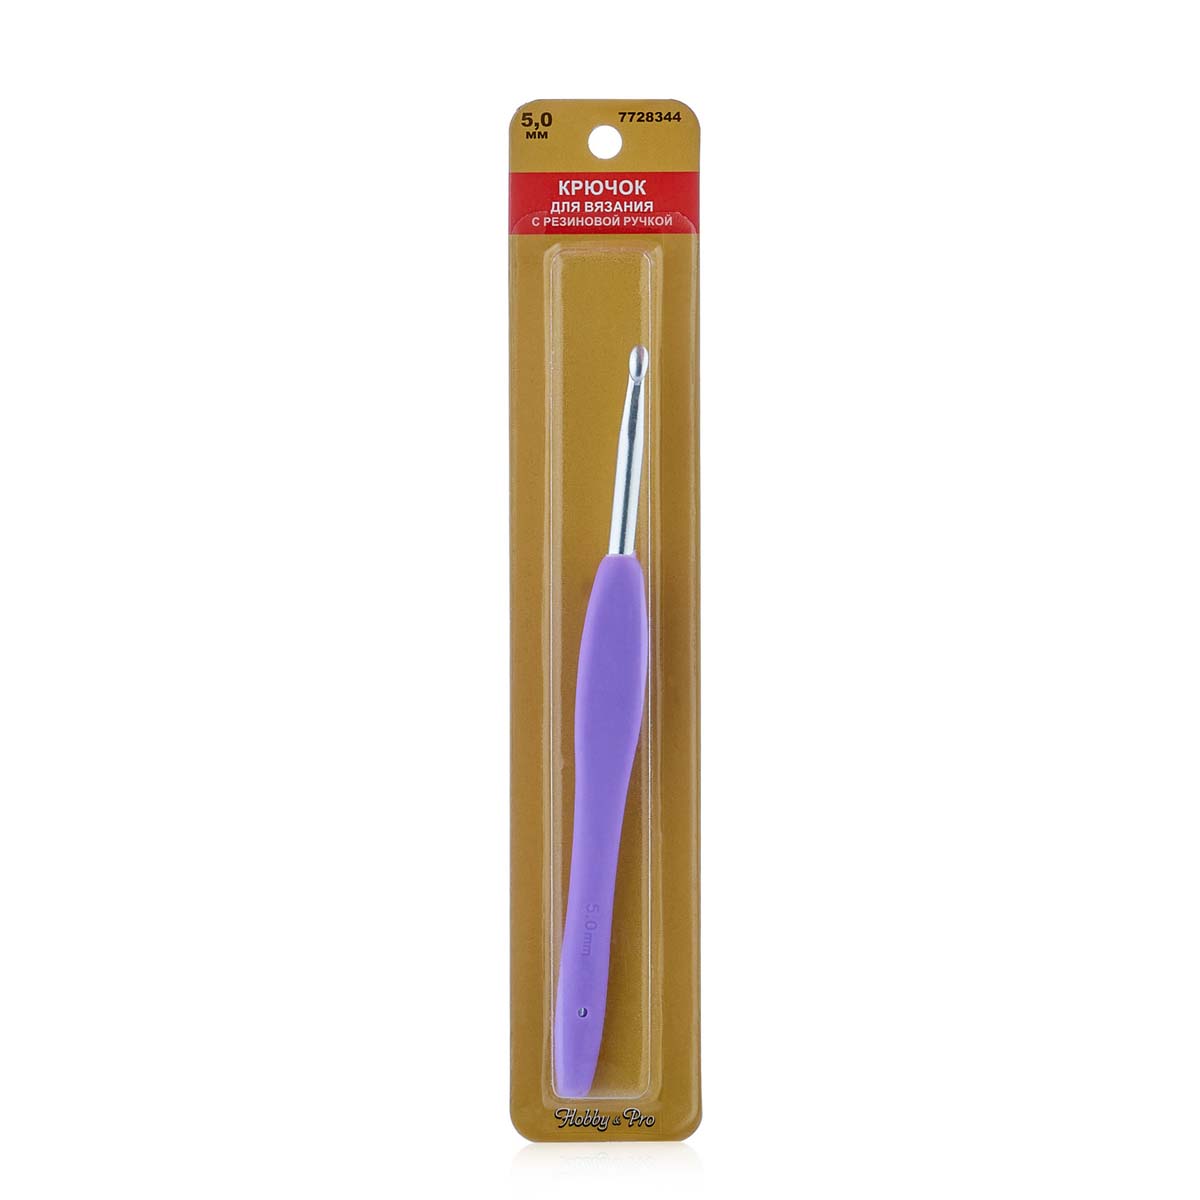 фото Крючок для вязания с резиновой ручкой, 5,0 мм hobby&pro7728344